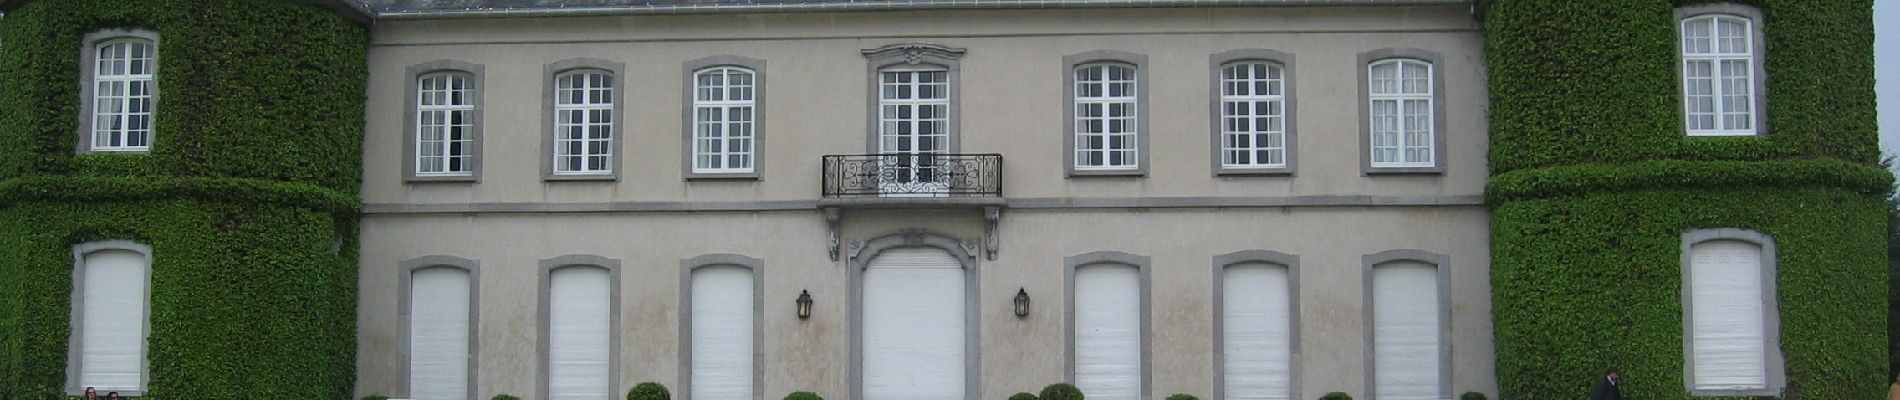 POI Terhulpen - Château de La Hulpe - Photo